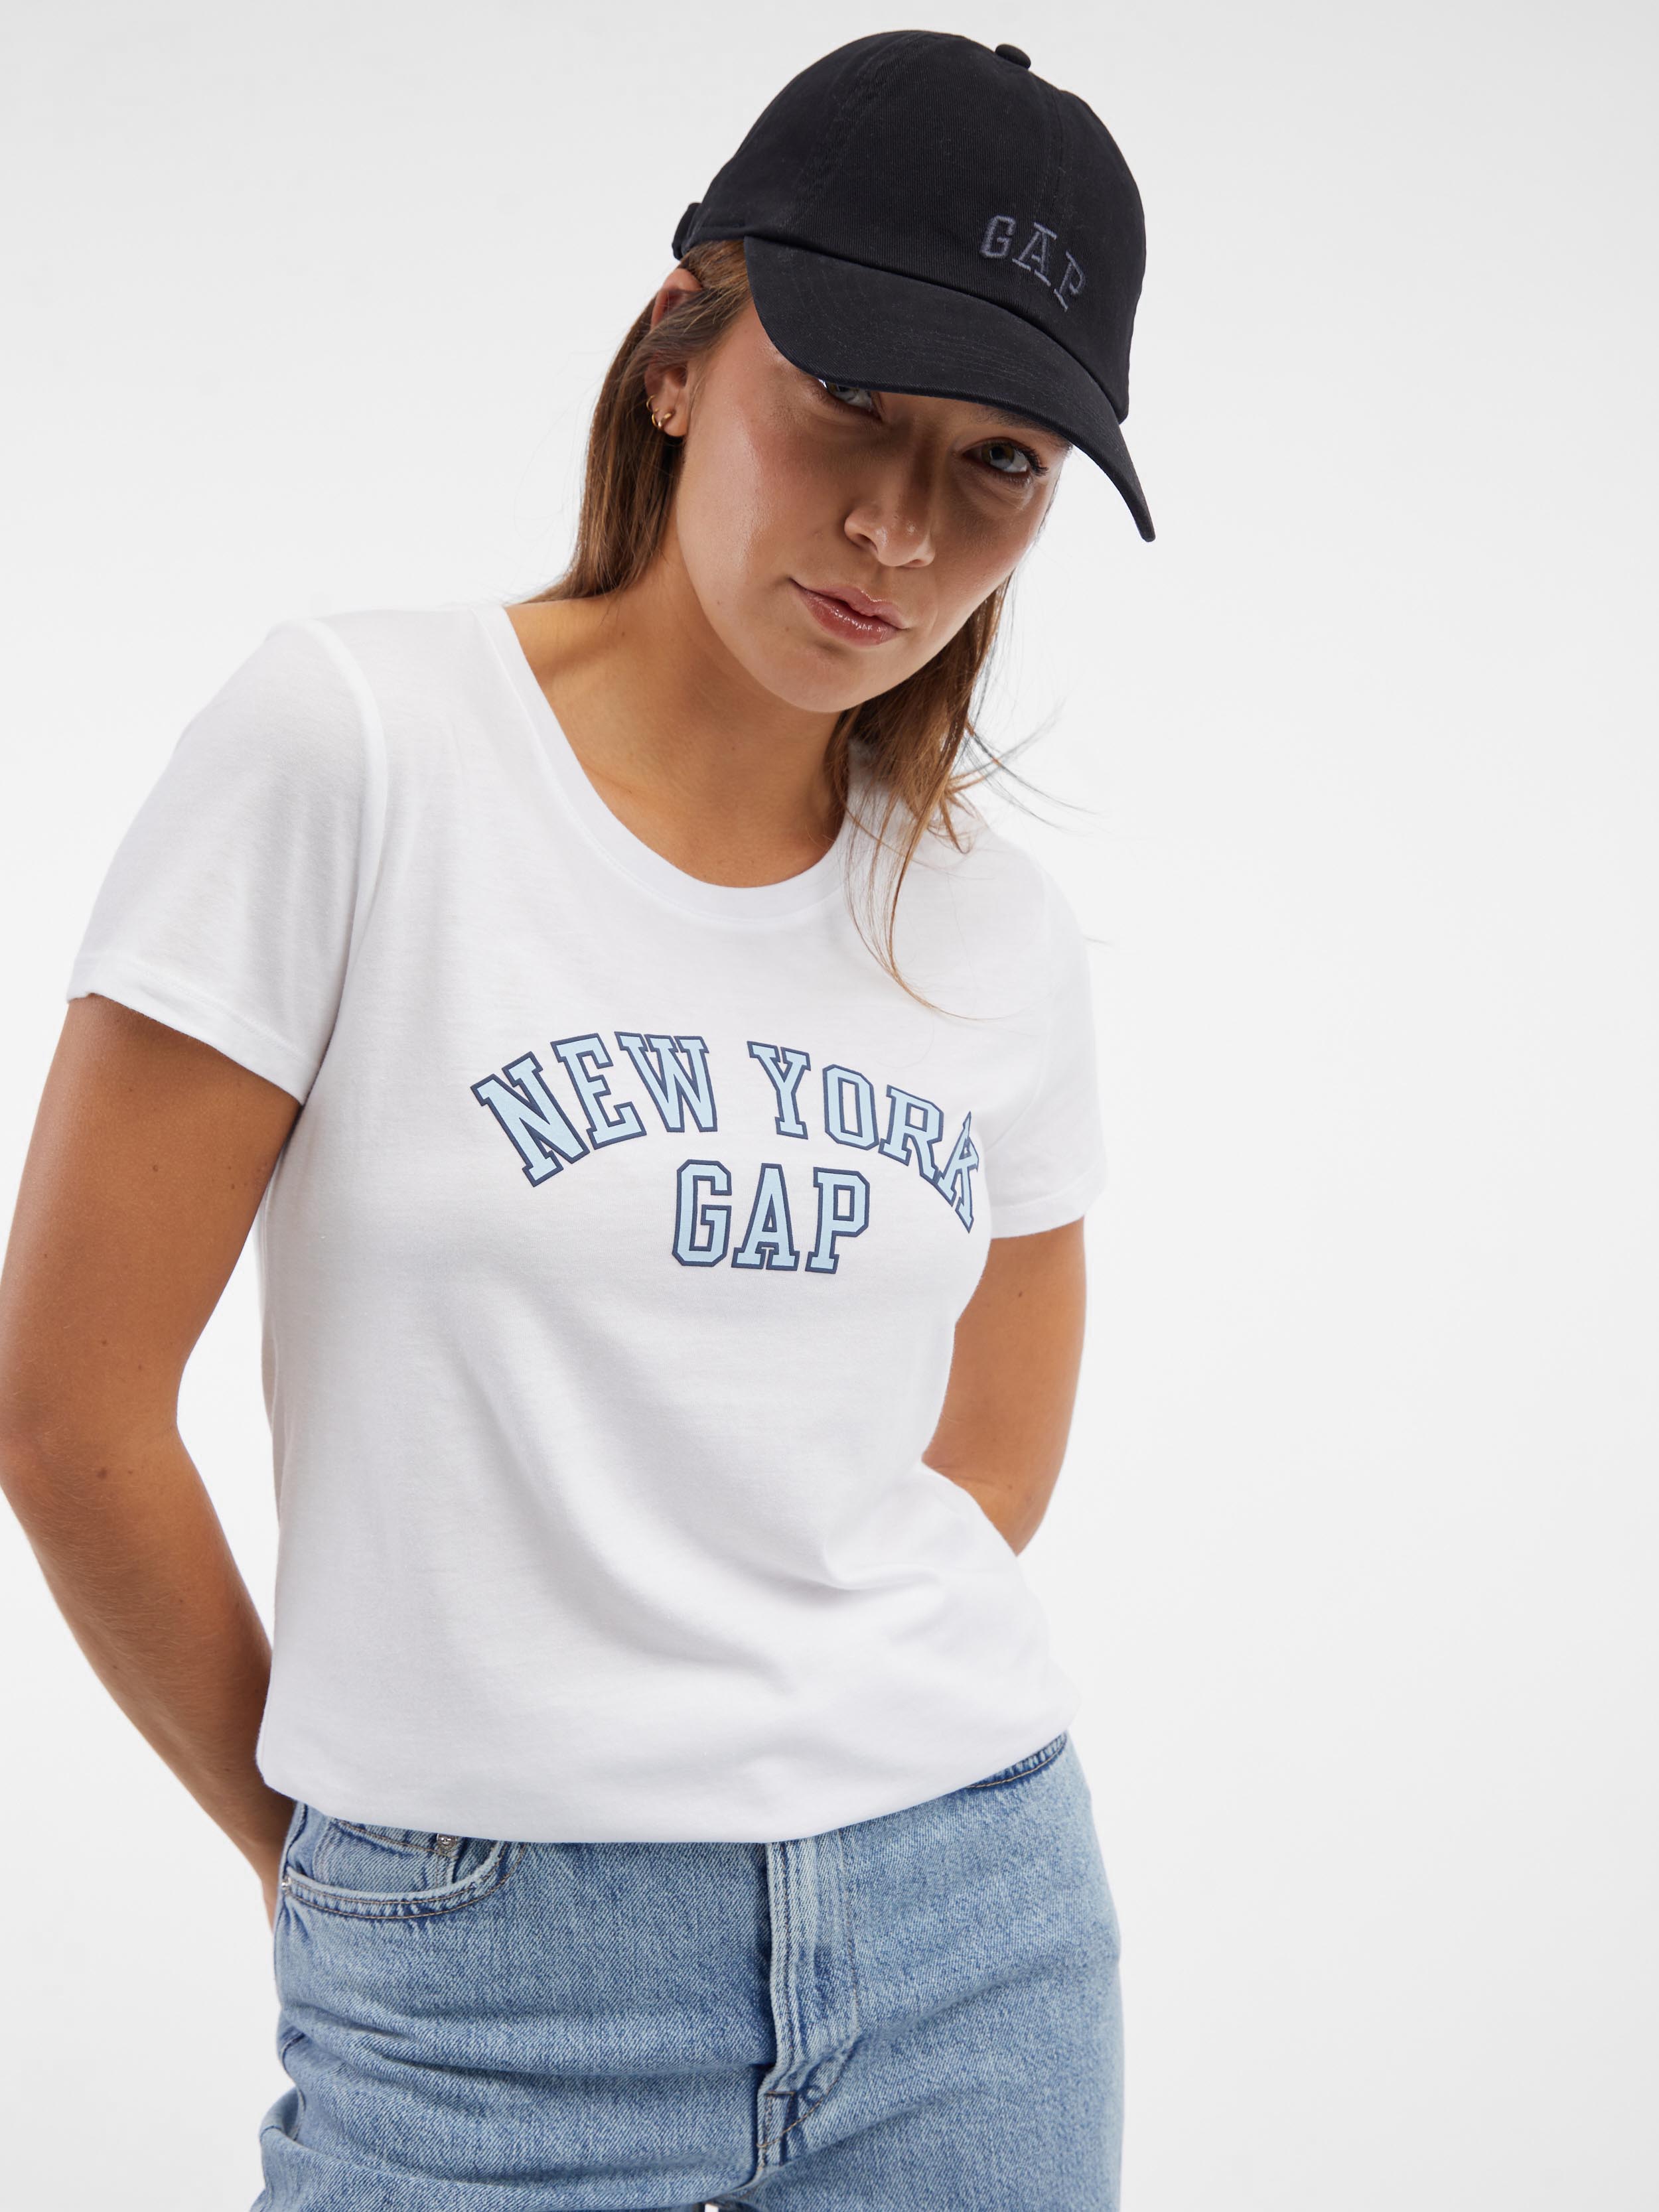 GAP T-Shirt New York - Women